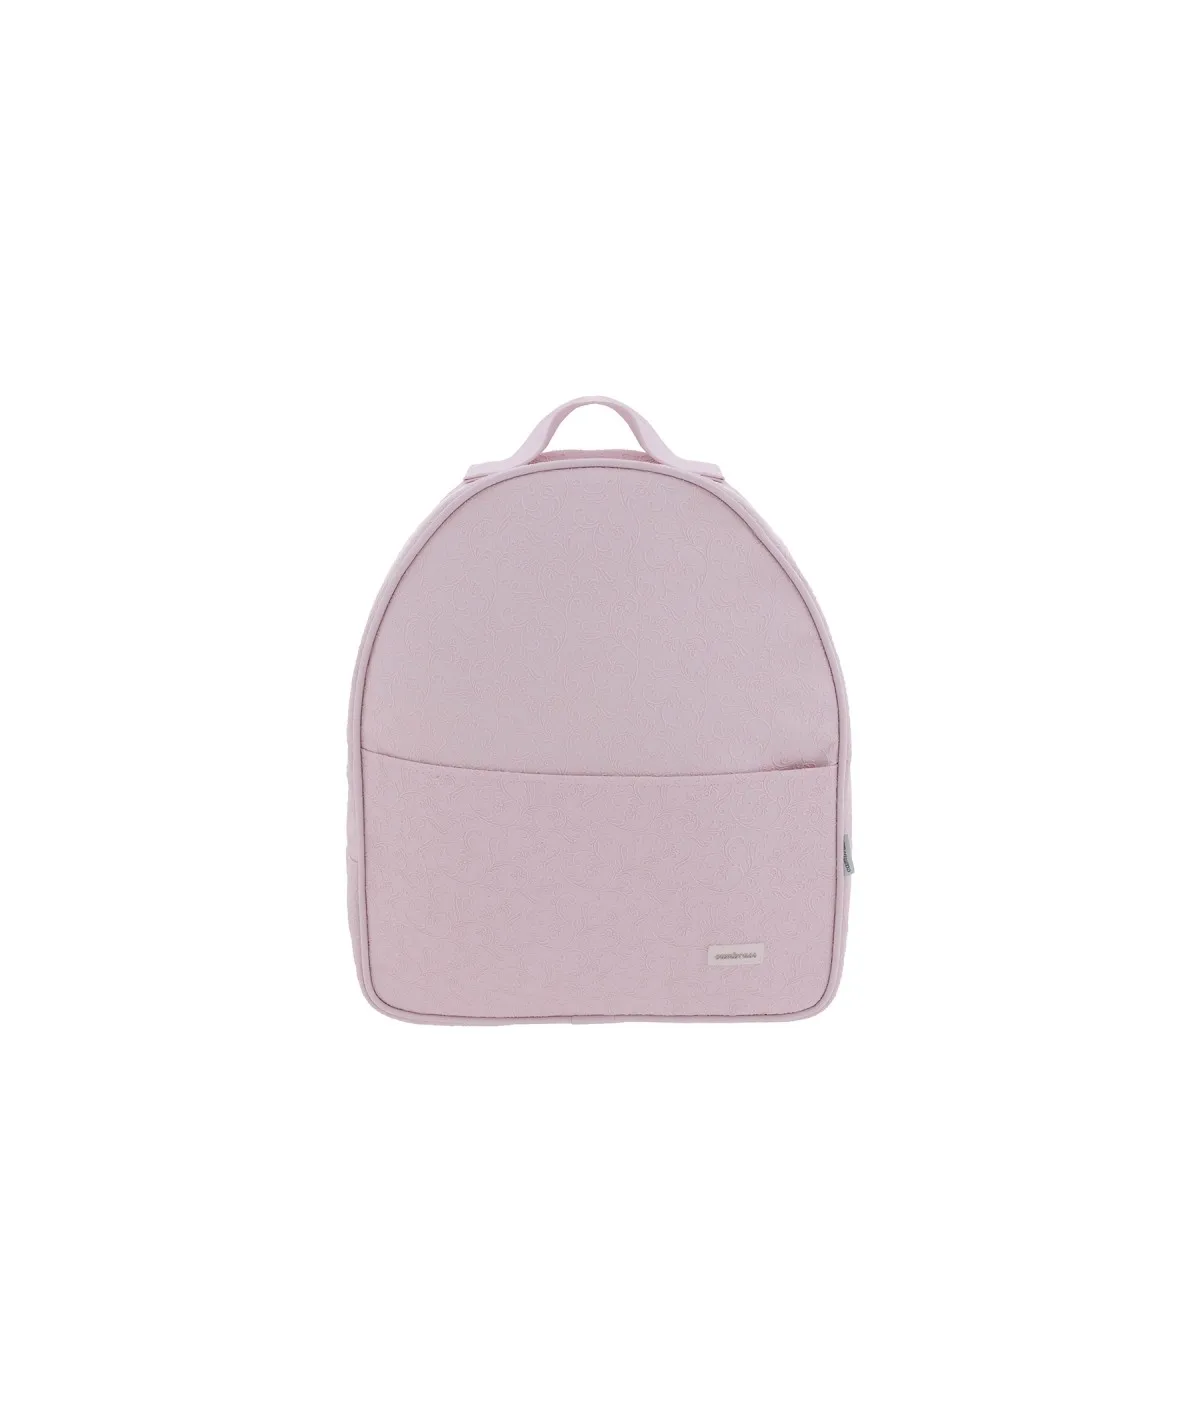 Cambrass Elite рюкзак в розовом цвете - купить по выгодной цене |